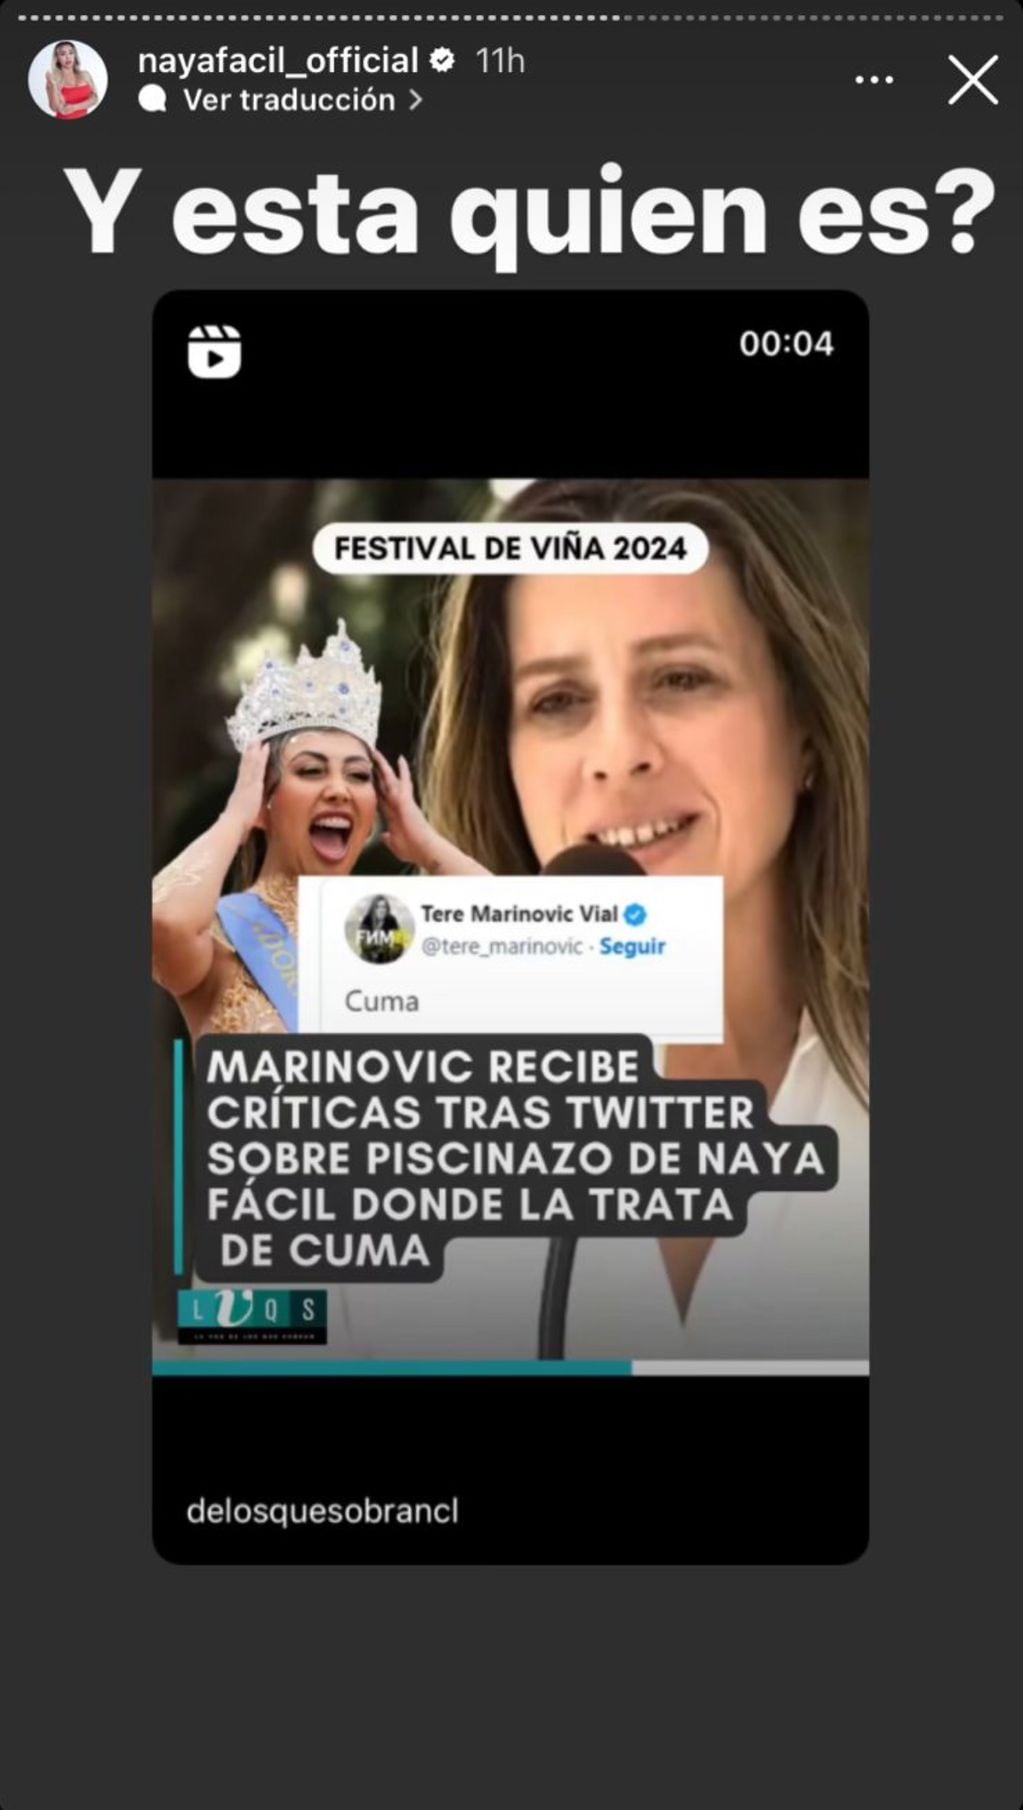 “¿Y esta quién es?”: La polémica disputa en redes sociales entre Teresa Marinovic y Naya Fácil. Imagen: Naya Fácil | Instagram.